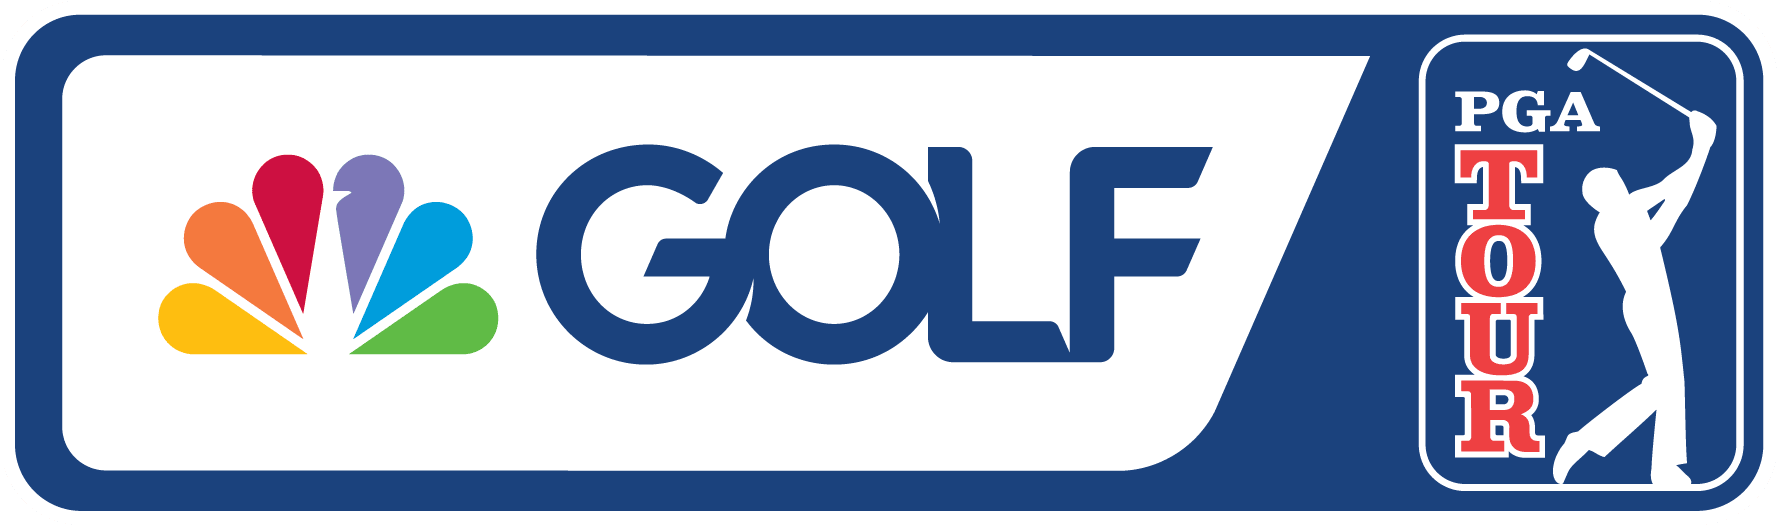 PGATOUR.COM - Official Home of Golf and the FedExCup - PGA TOUR